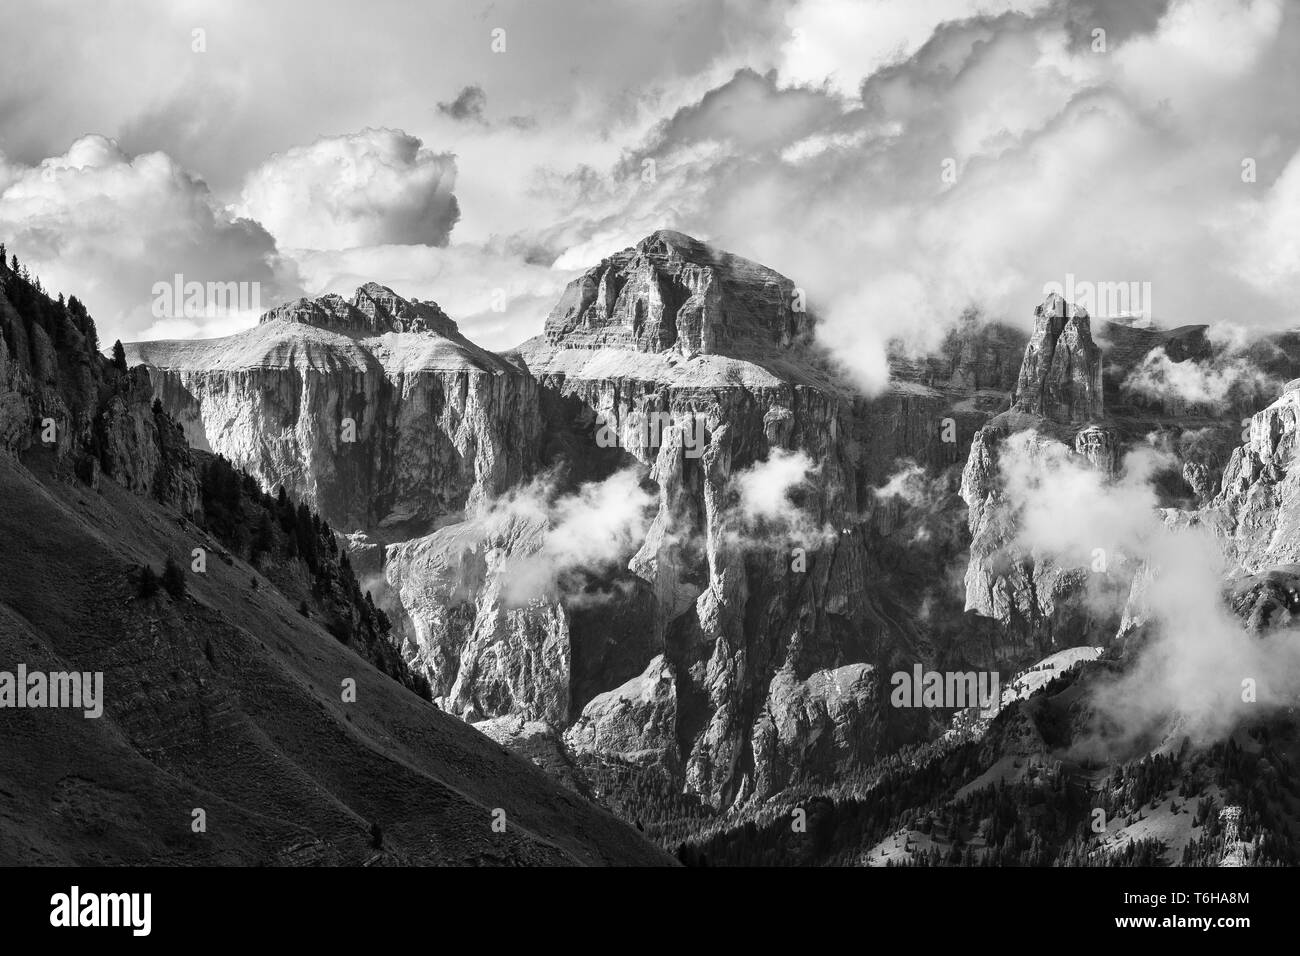 Die Sella-Gruppe, der Piz Ciavazes-Gipfel. Die Grödner Dolomiten. Italienische Alpen. Europa. Schwarz-weiße Kunstlandschaft. Stockfoto